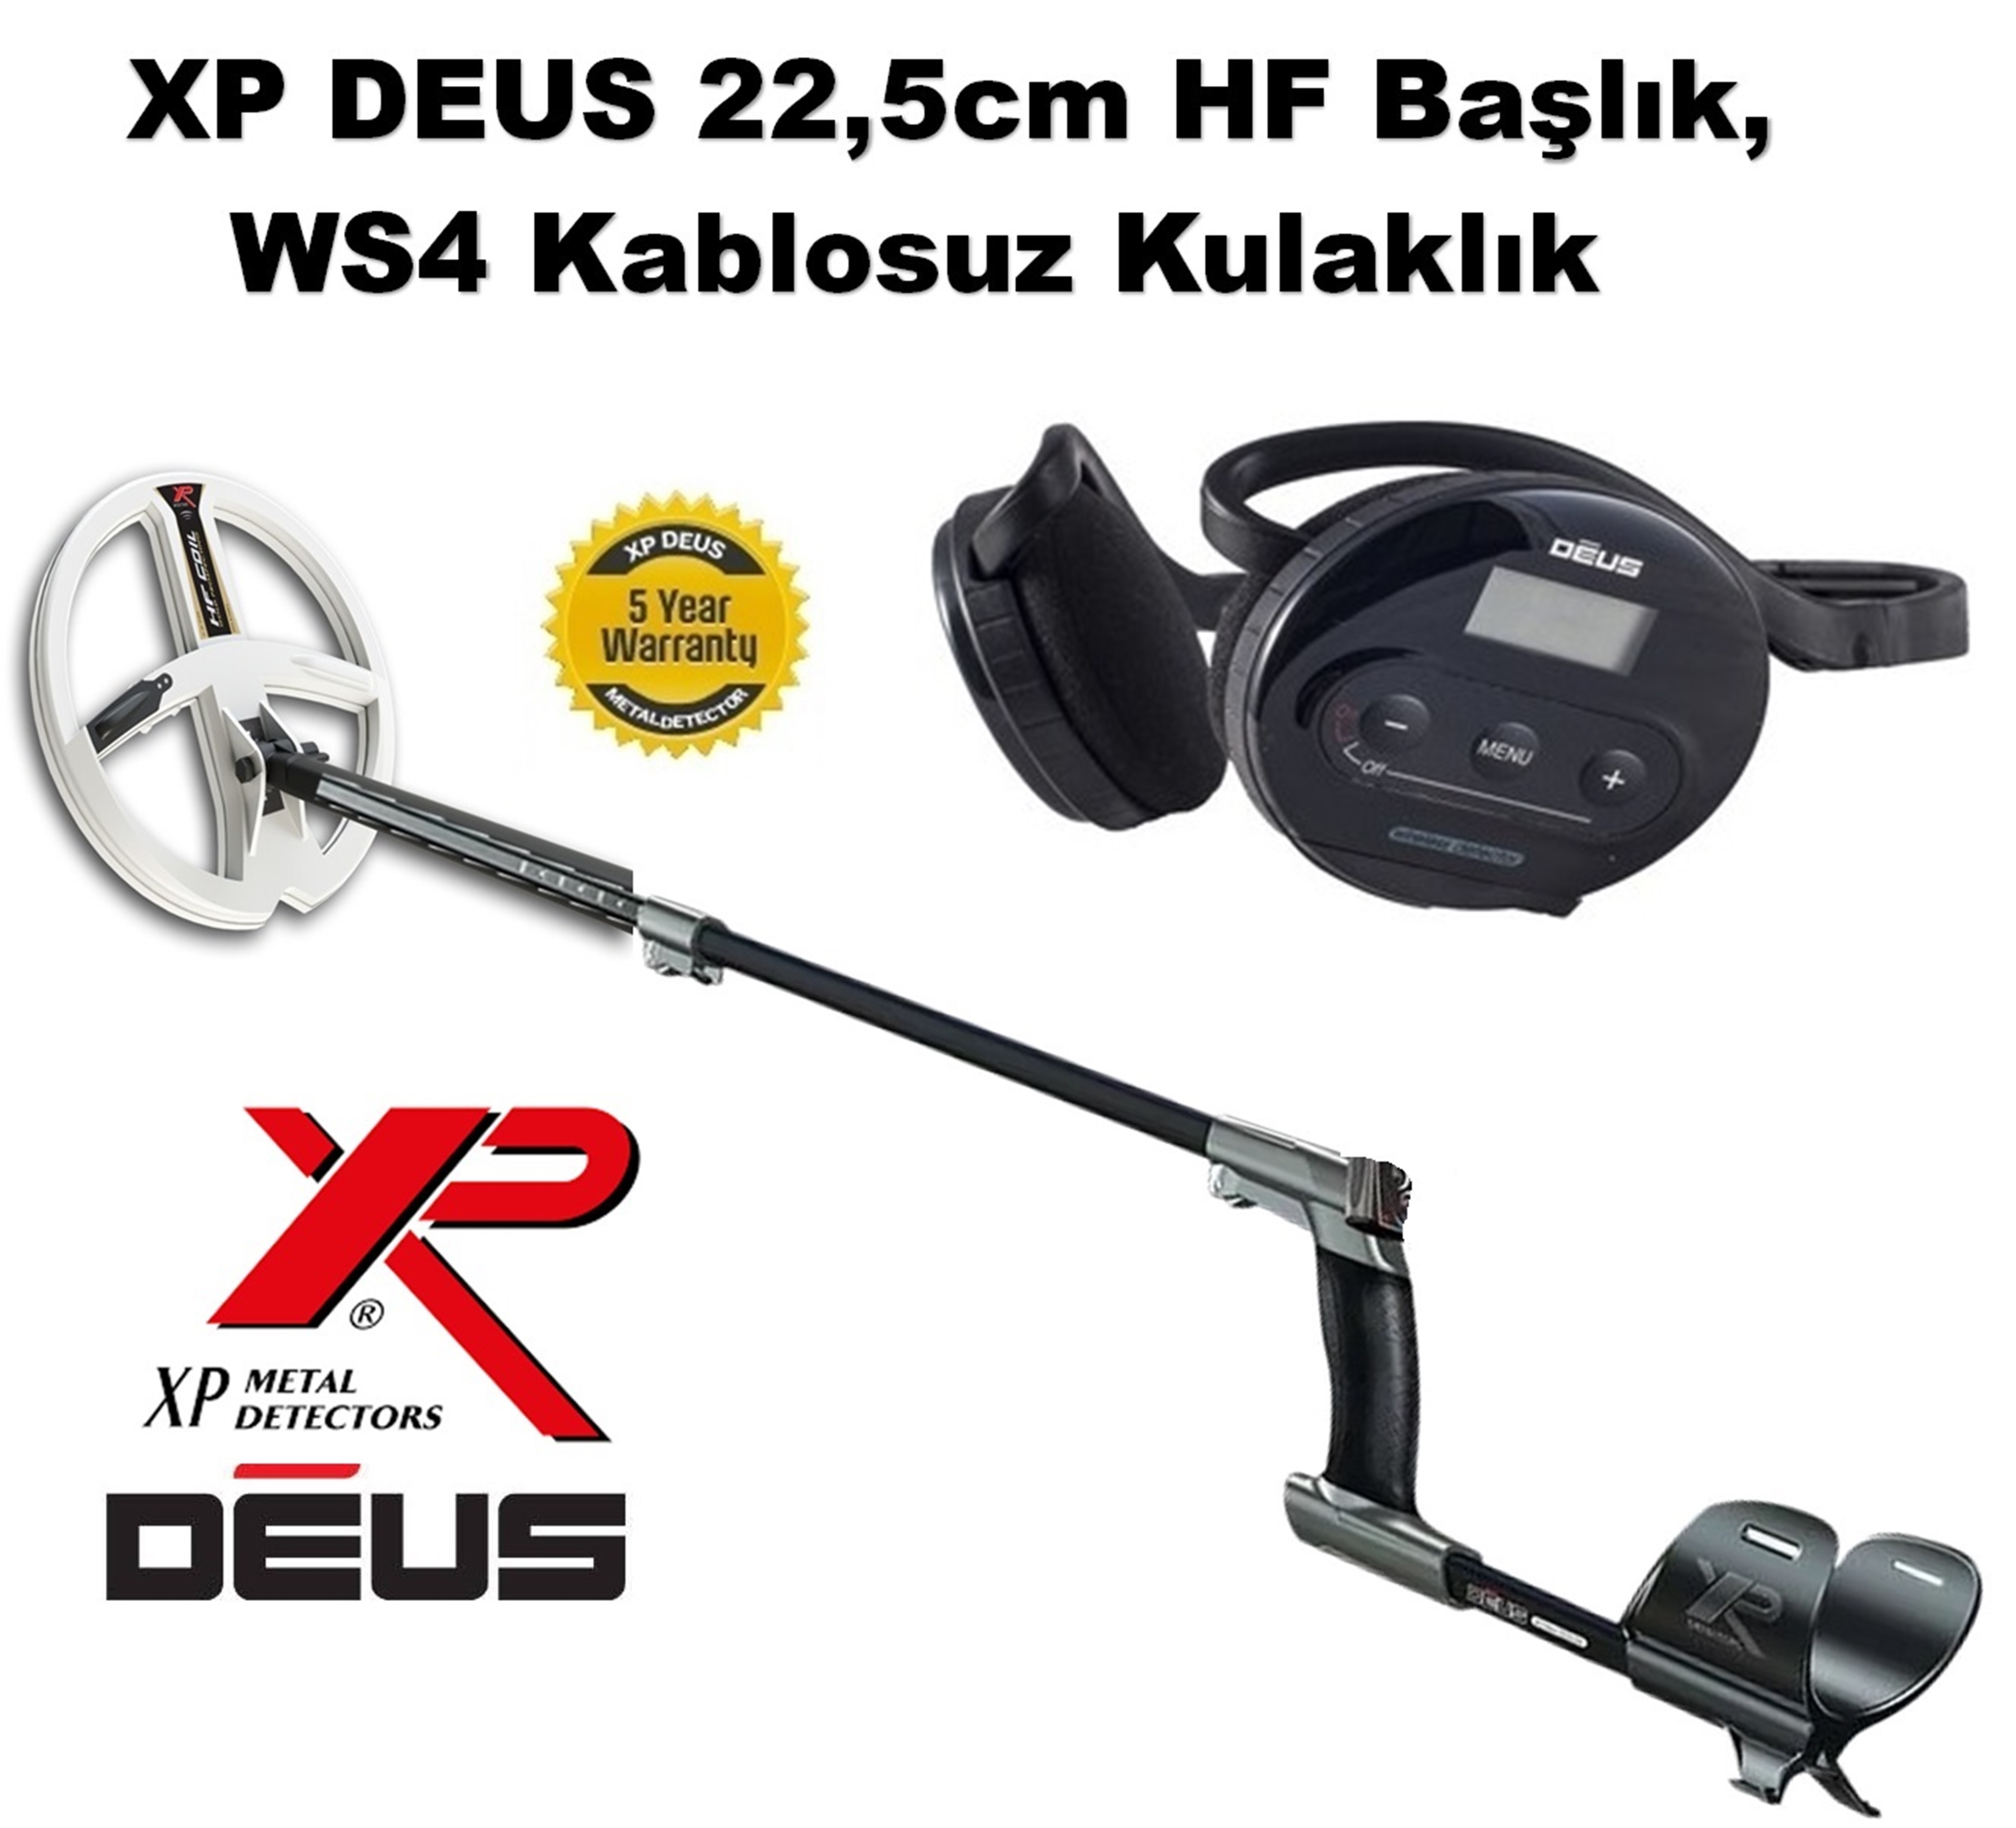 XP DEUS - 22,5cm HF Başlık, WS4 Kulaklık